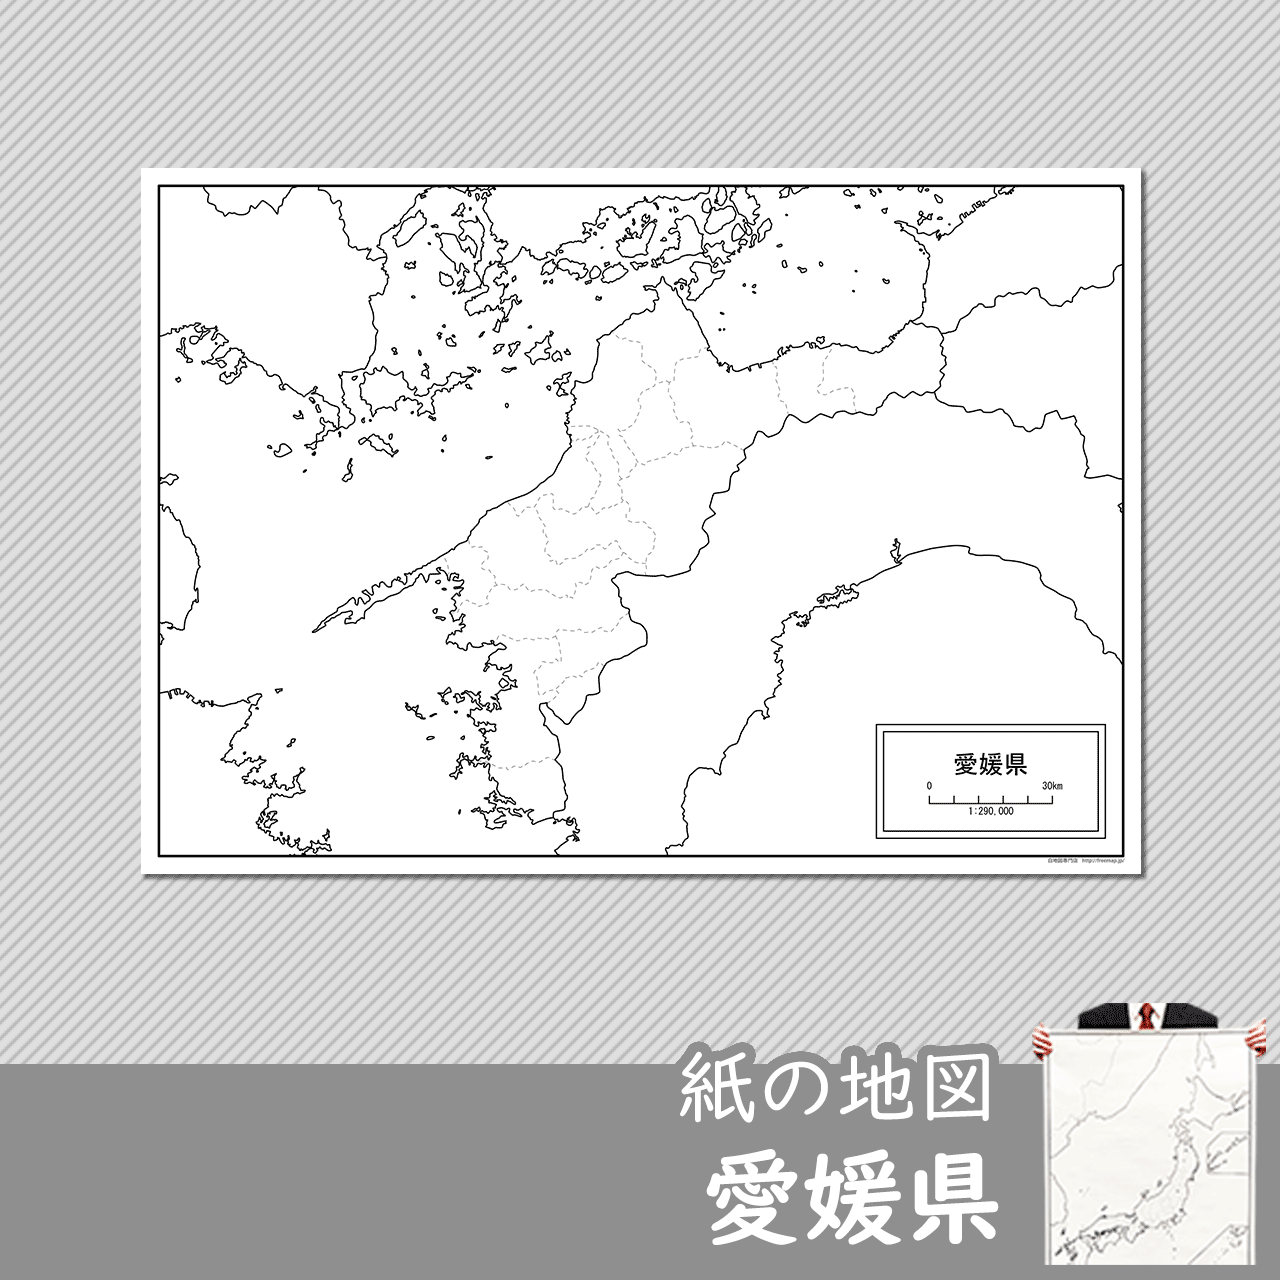 愛媛県の紙の白地図のサムネイル